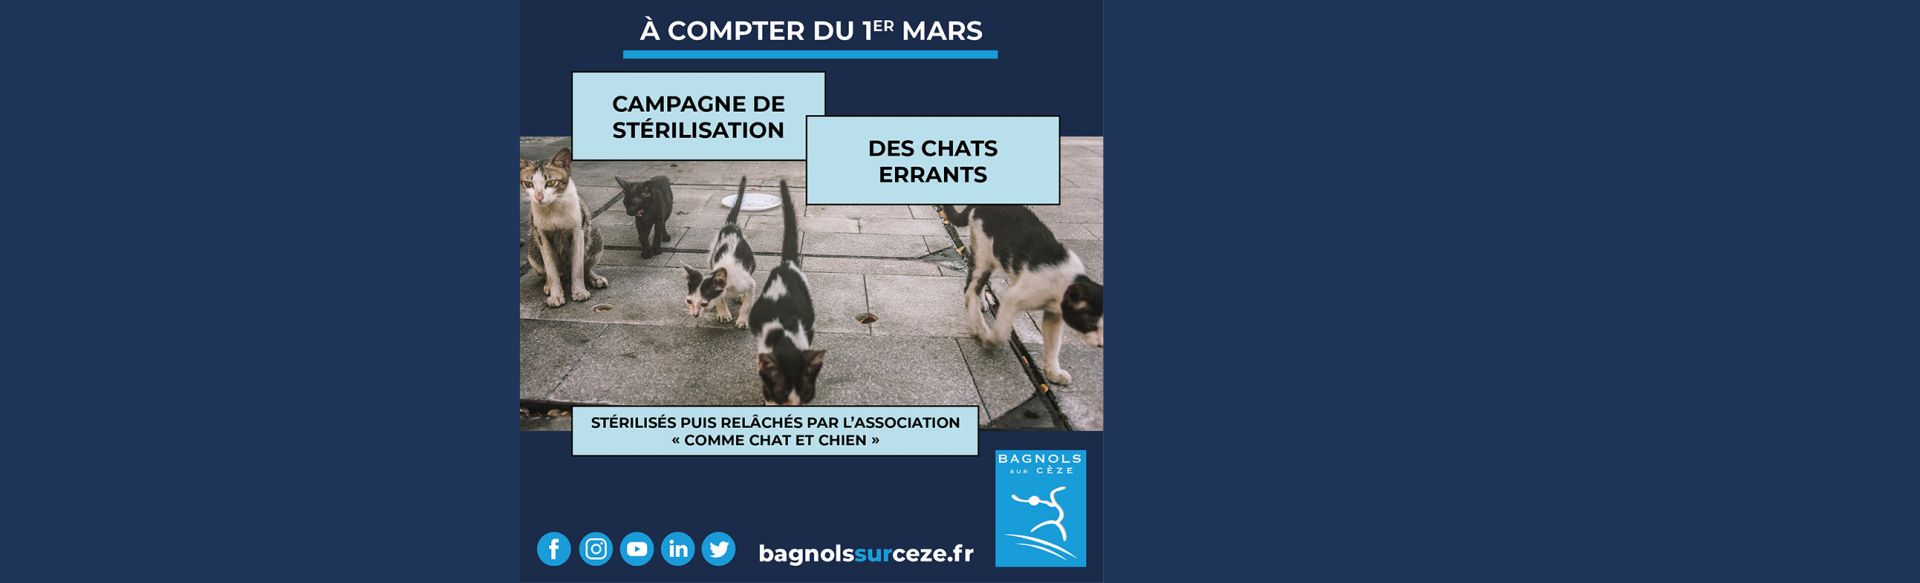 Bagnols-sur-Cèze réitère sa campagne de stérilisation des chats errants